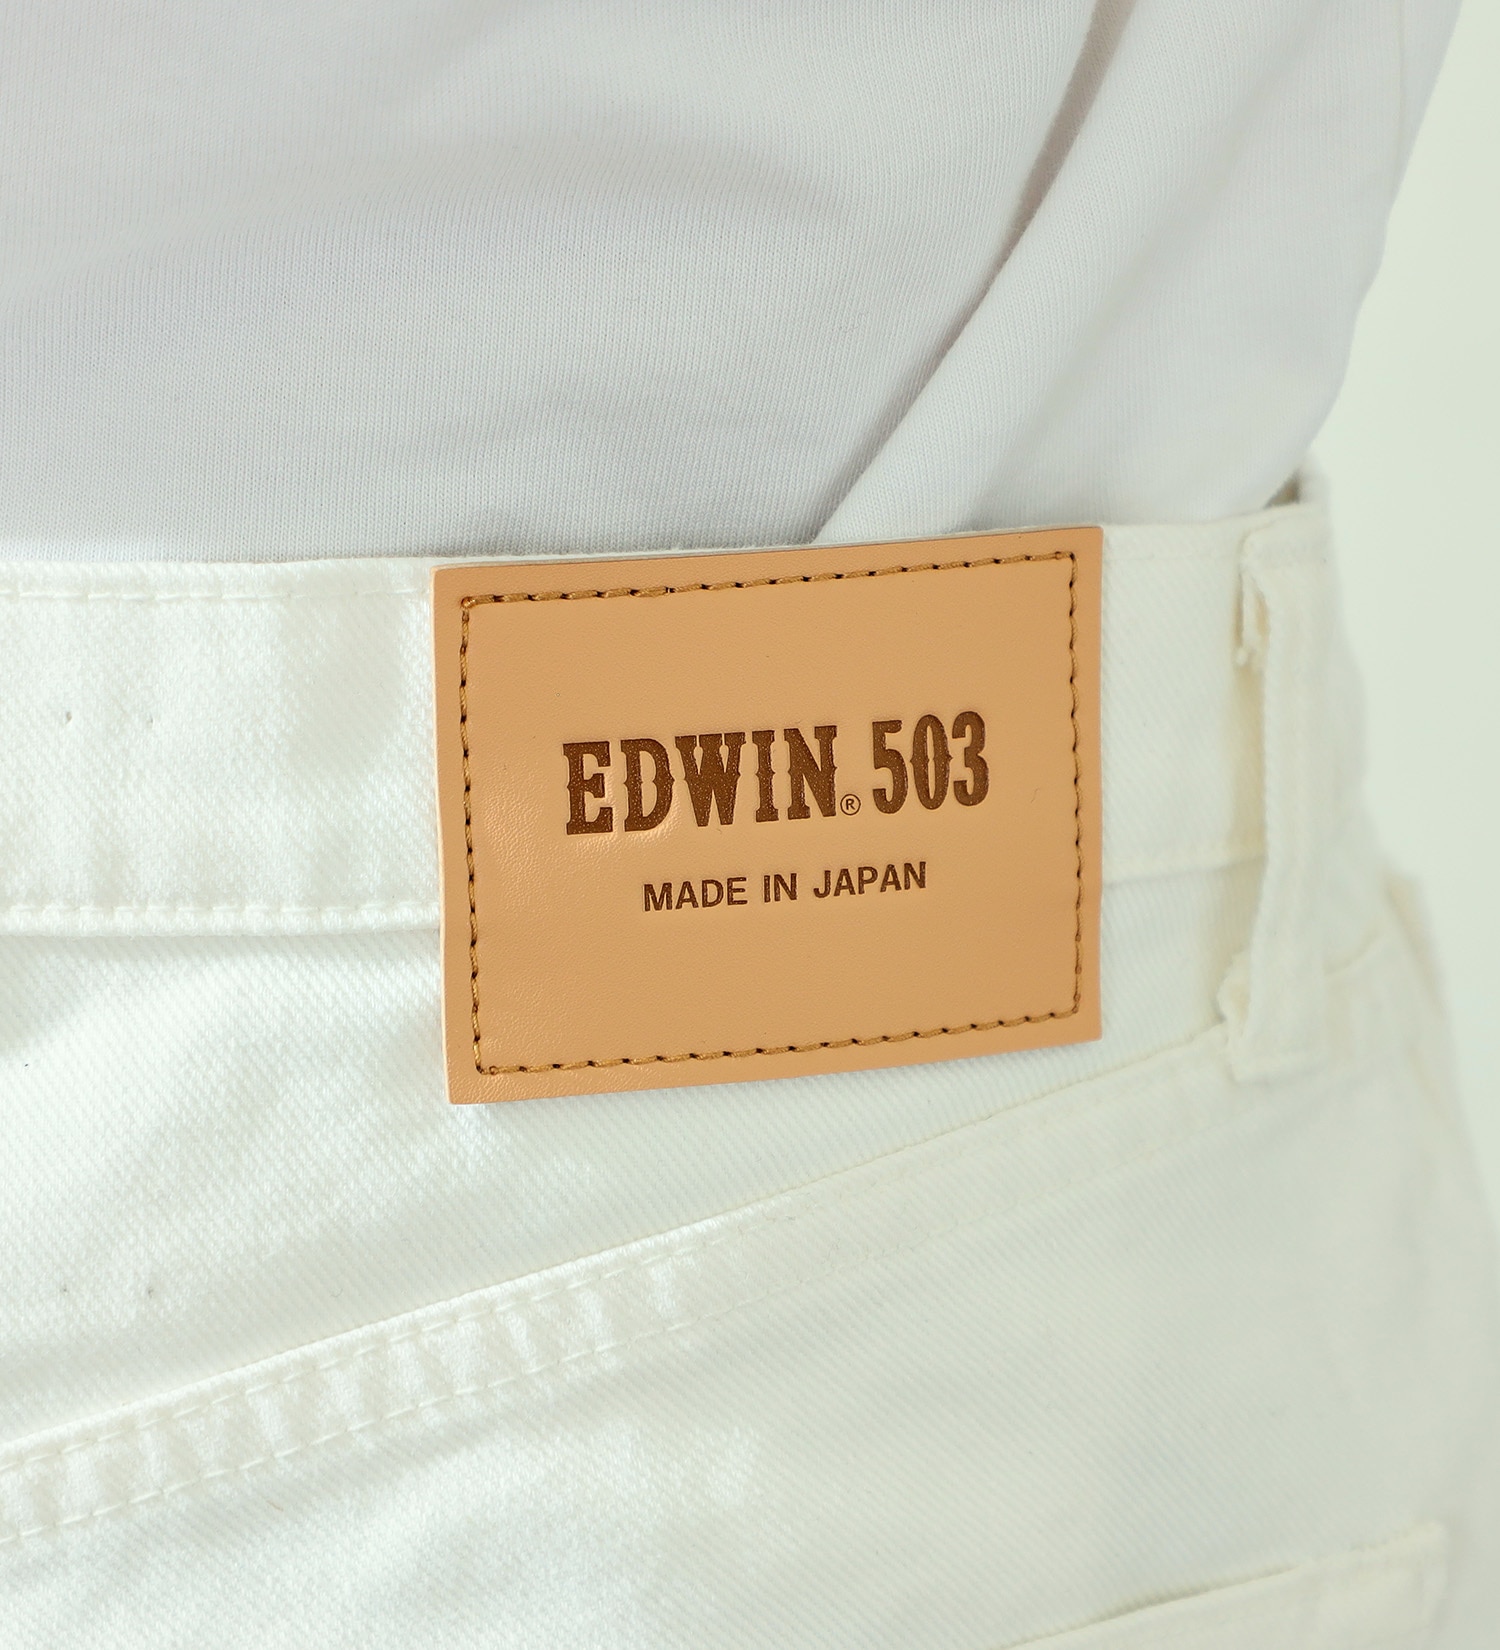 EDWIN(エドウイン)の503 レギュラーストレートパンツ REGULAR STRAIGHT MADE IN JAPAN 日本製|パンツ/デニムパンツ/メンズ|ホワイト